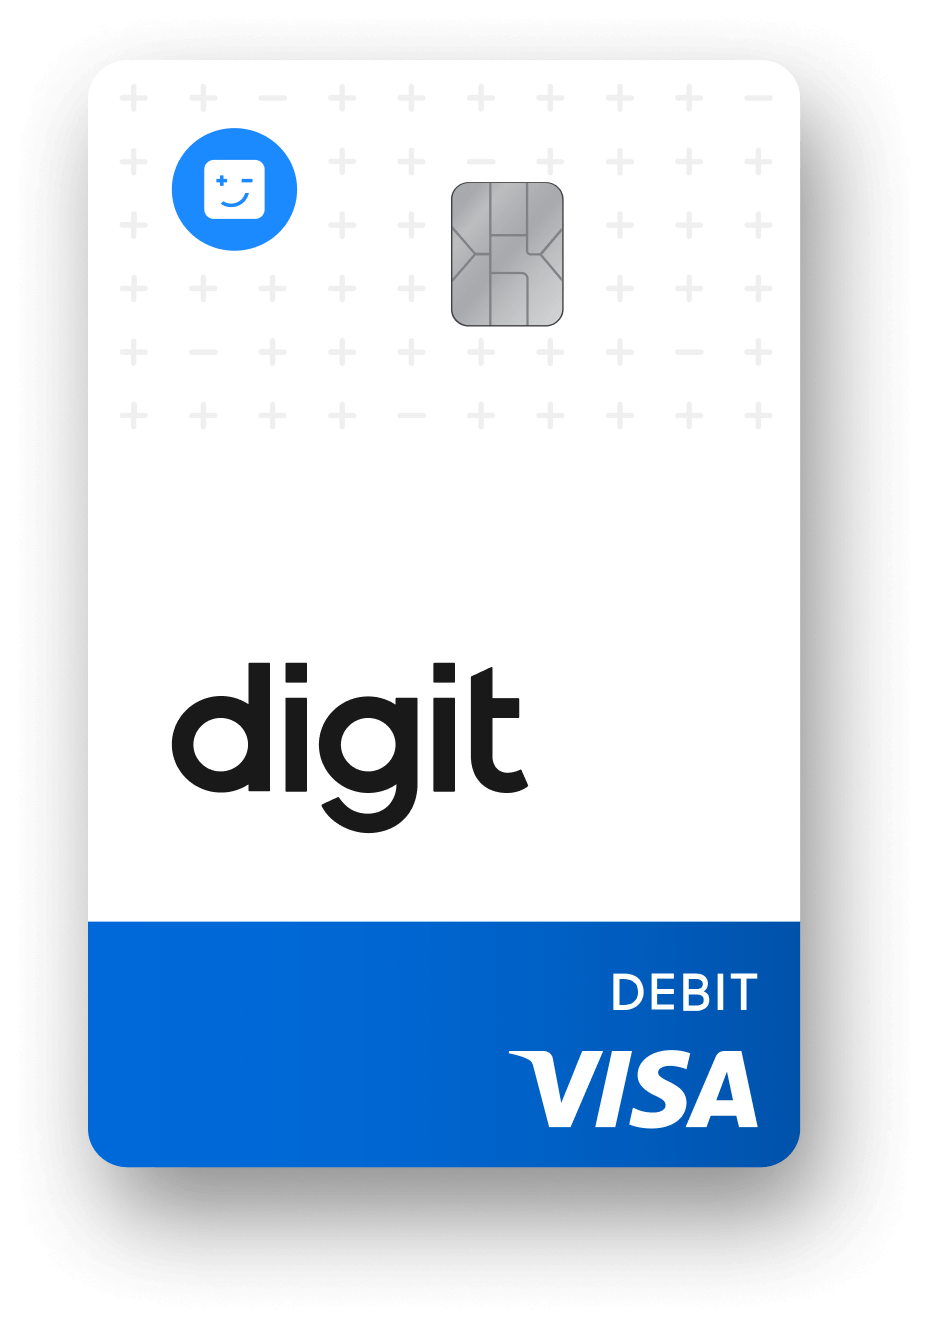 Digit debit card